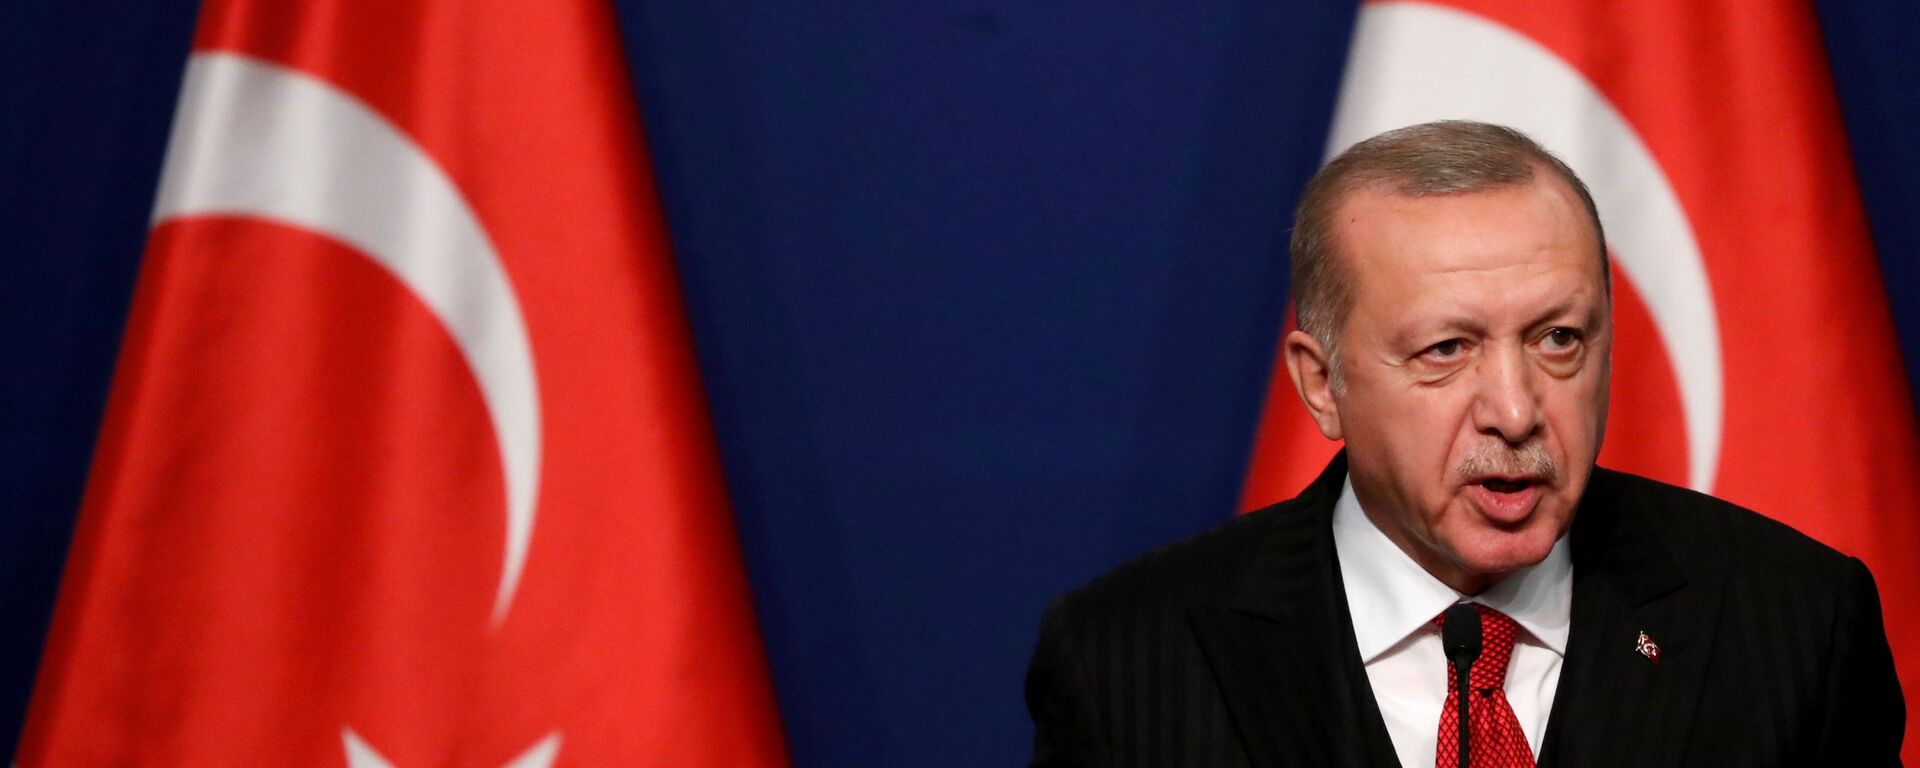 Tổng thống Thổ Nhĩ Kỳ Recep Tayyip Erdogan tham dự cuộc họp báo với Thủ tướng Hungary Viktor Orban (không ảnh) tại Budapest, Hungary ngày 7 tháng 11 năm 2019. REUTERS / Bernadett Szabo / File Photo - Sputnik Việt Nam, 1920, 30.09.2021